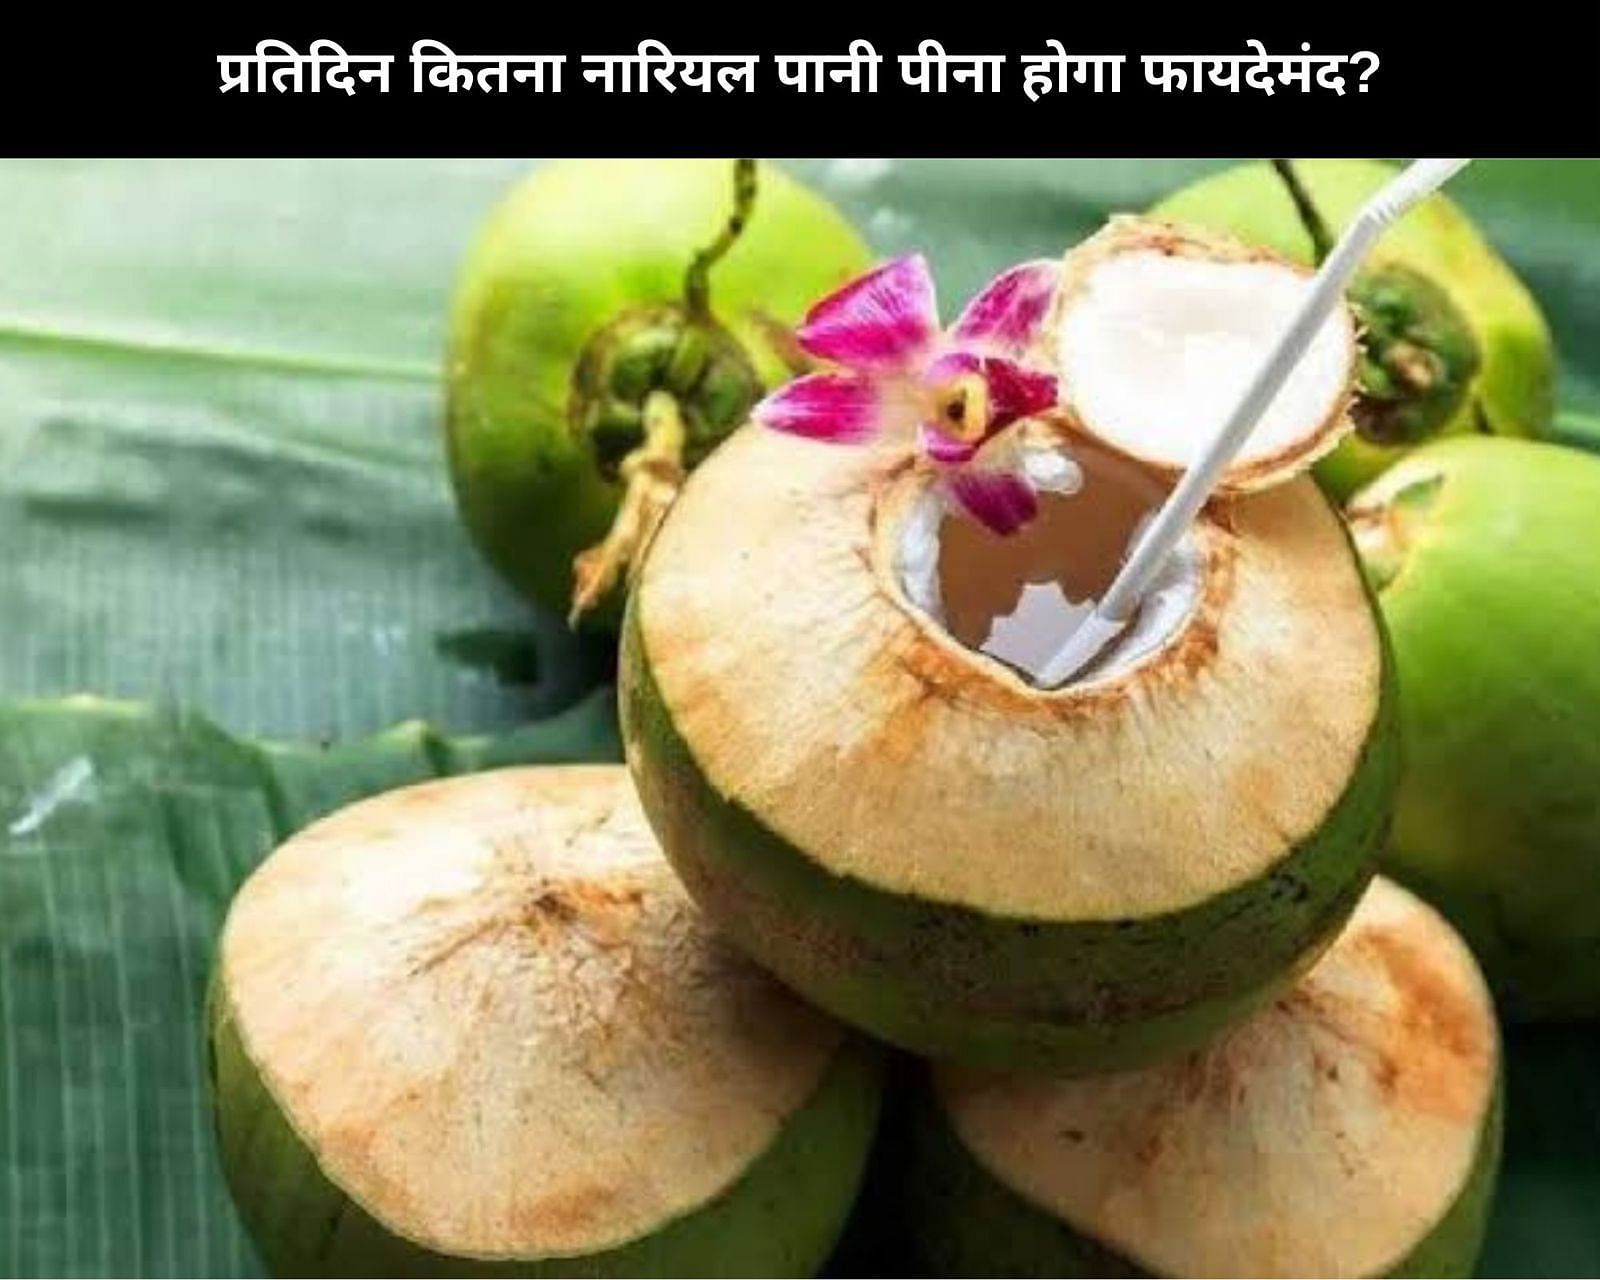 प्रतिदिन कितना नारियल पानी पीना होगा फायदेमंद? (फोटो - sportskeedaहिन्दी)